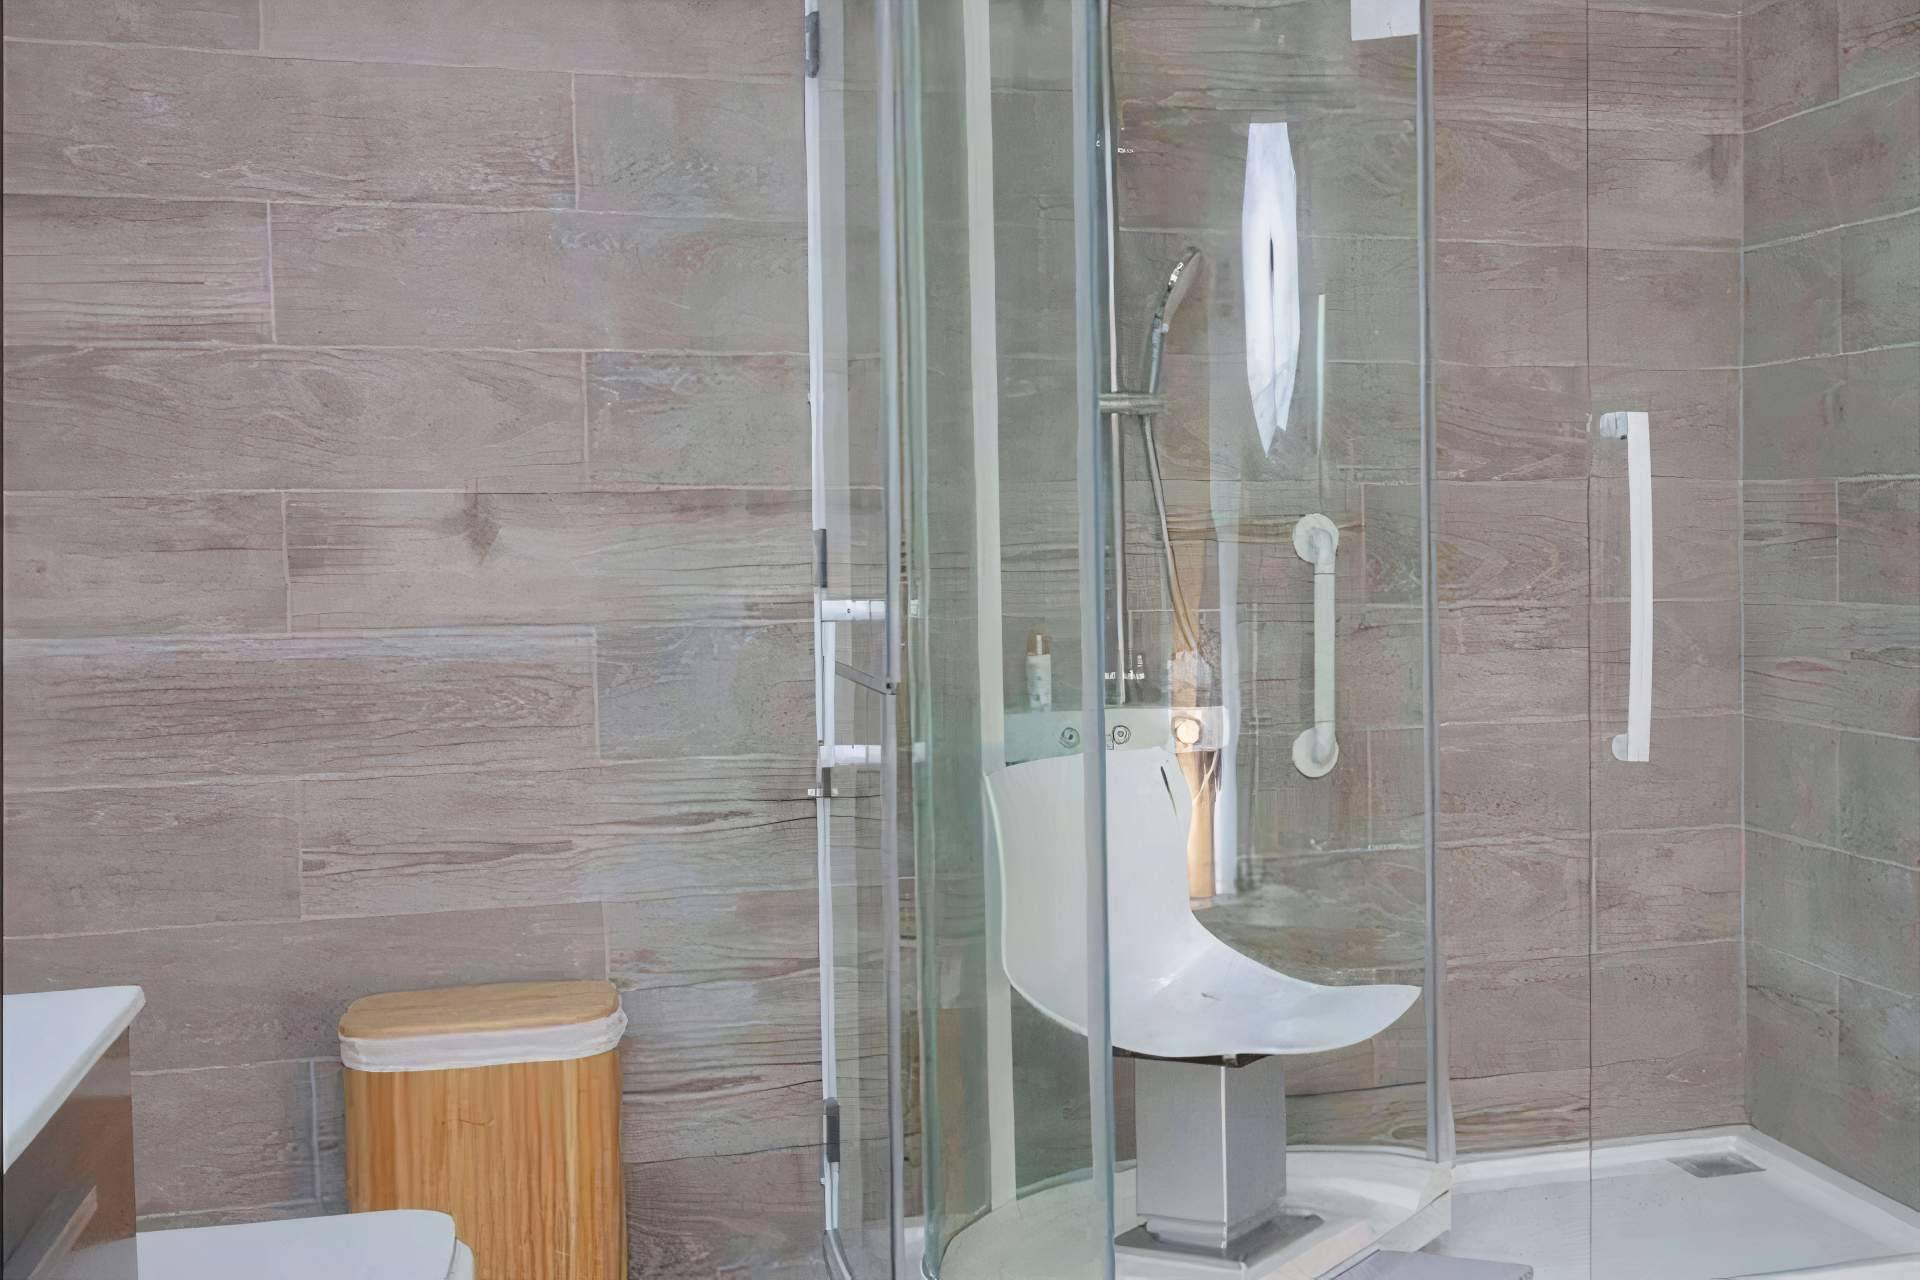 Excelshower, la empresa que diseña e instala duchas para personas con movilidad reducida